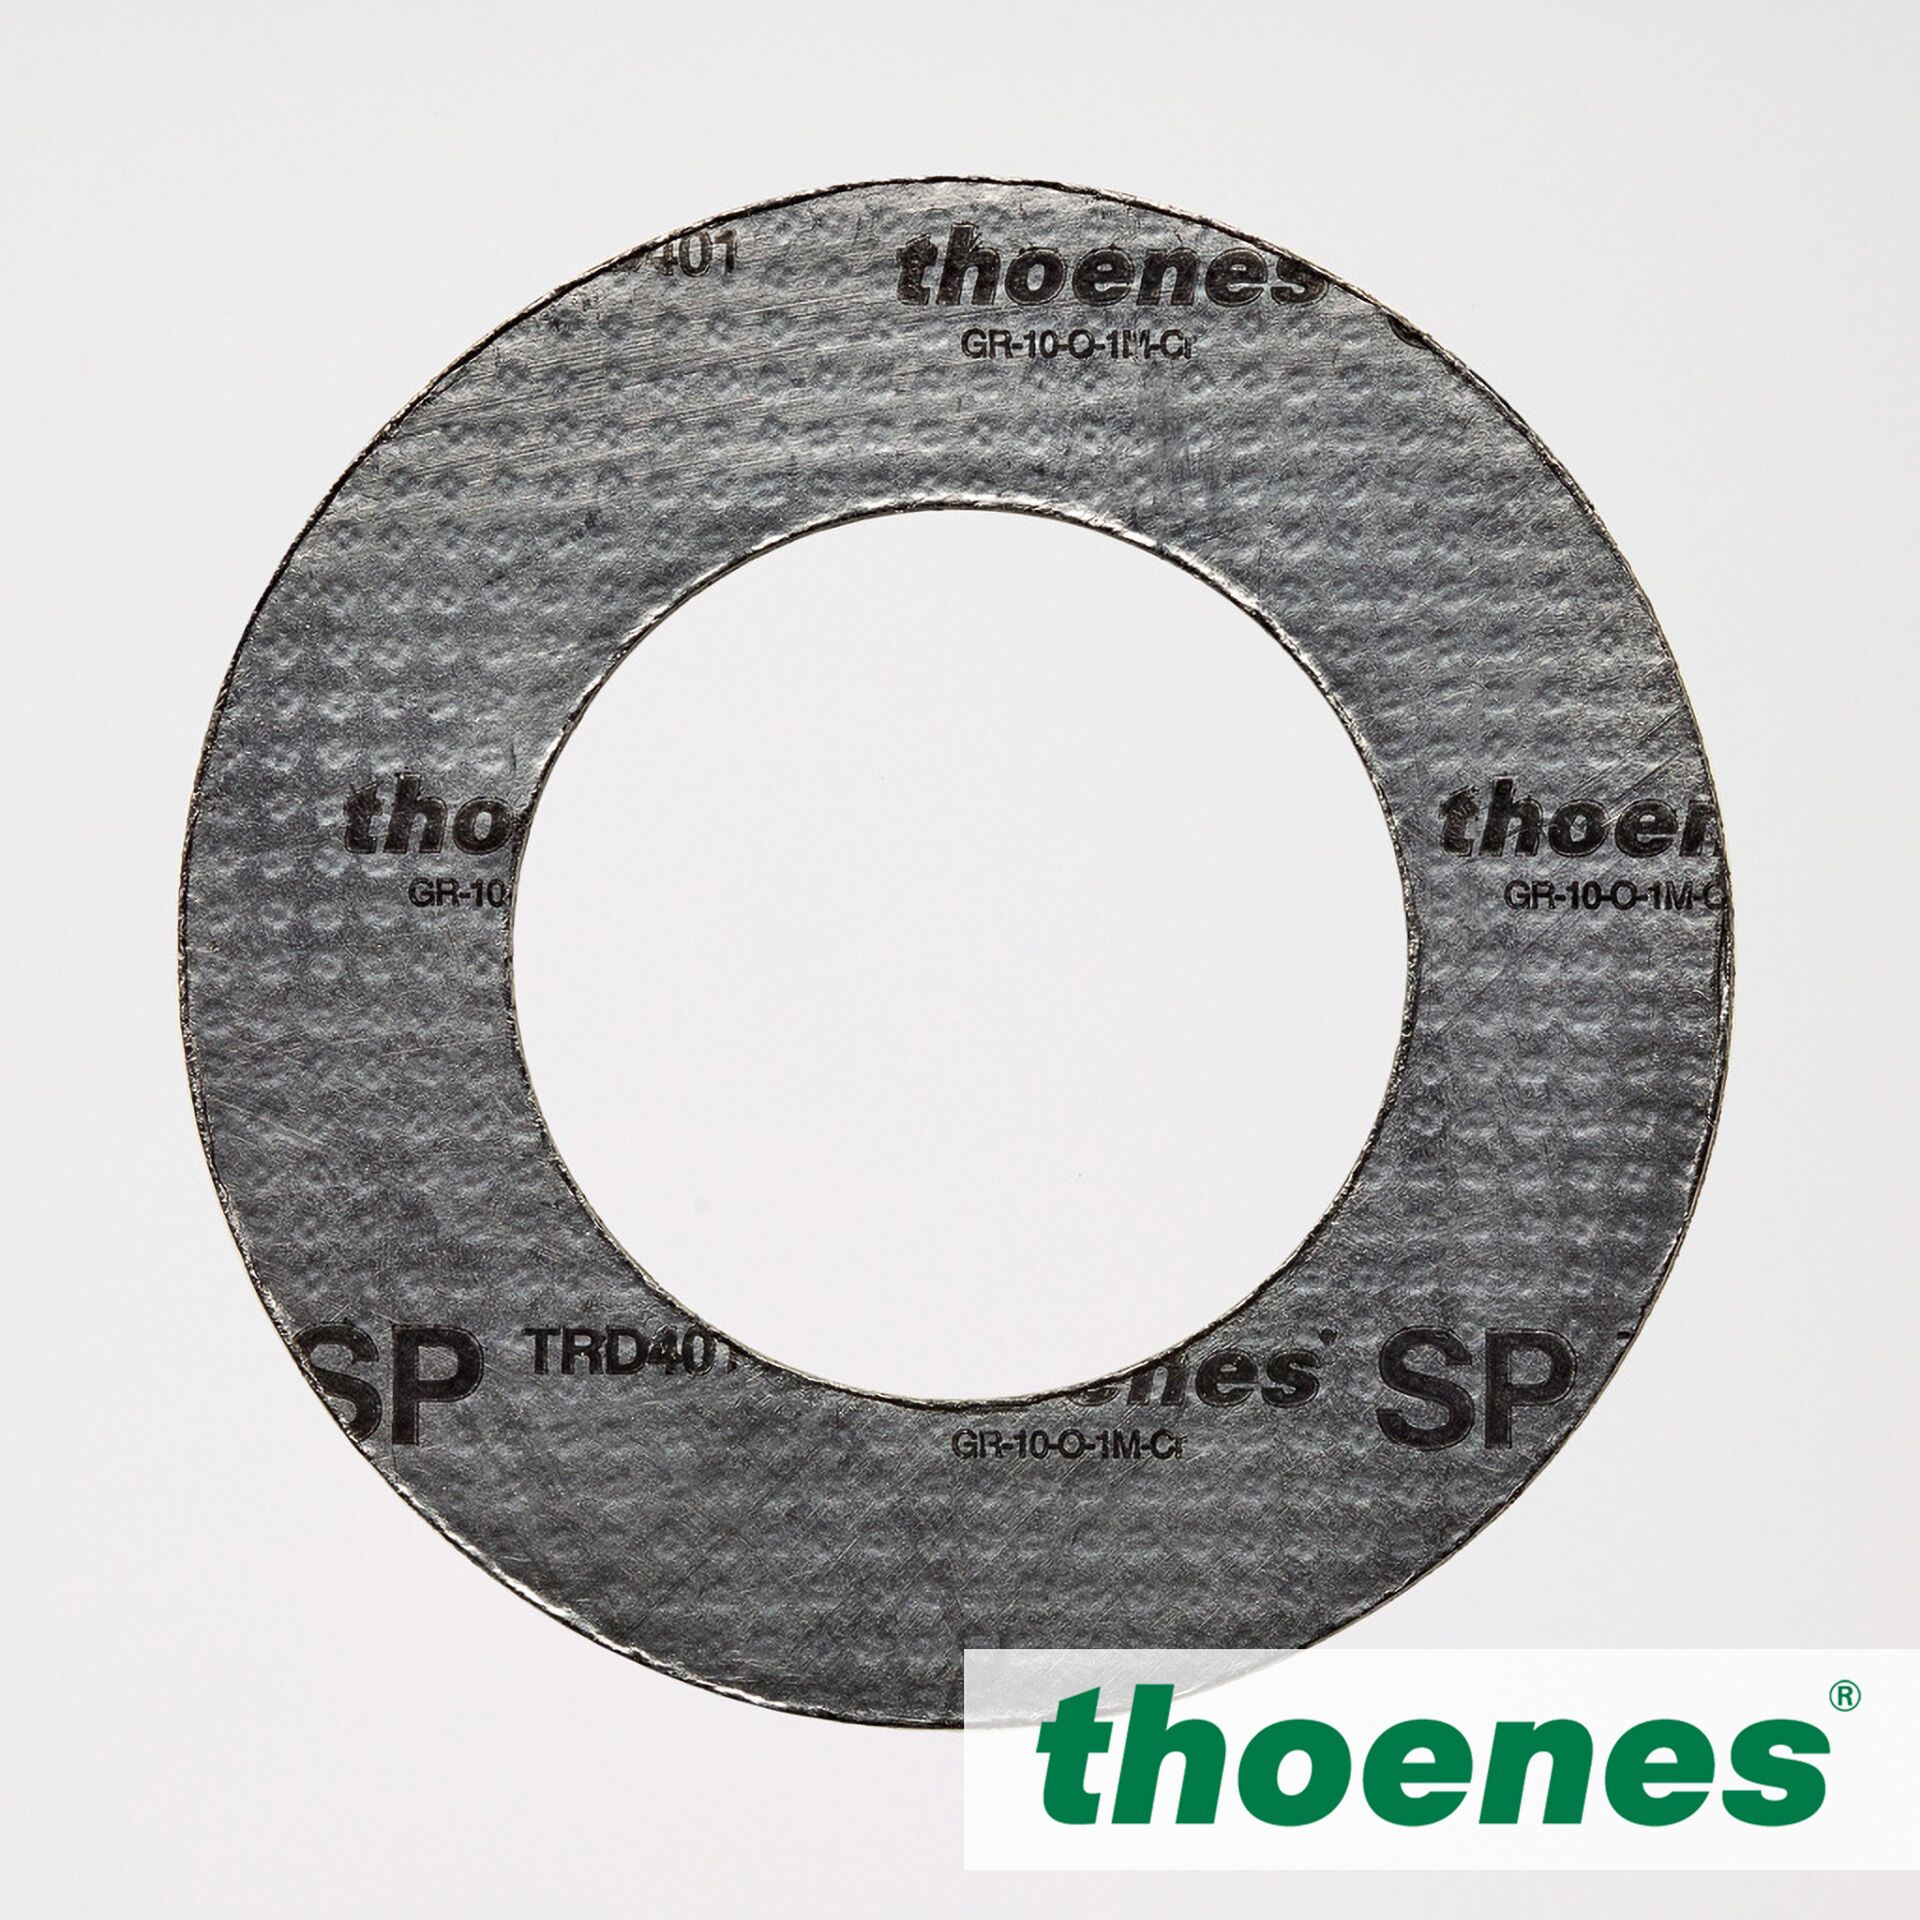 thoenes® SP TRD 401 gasket material